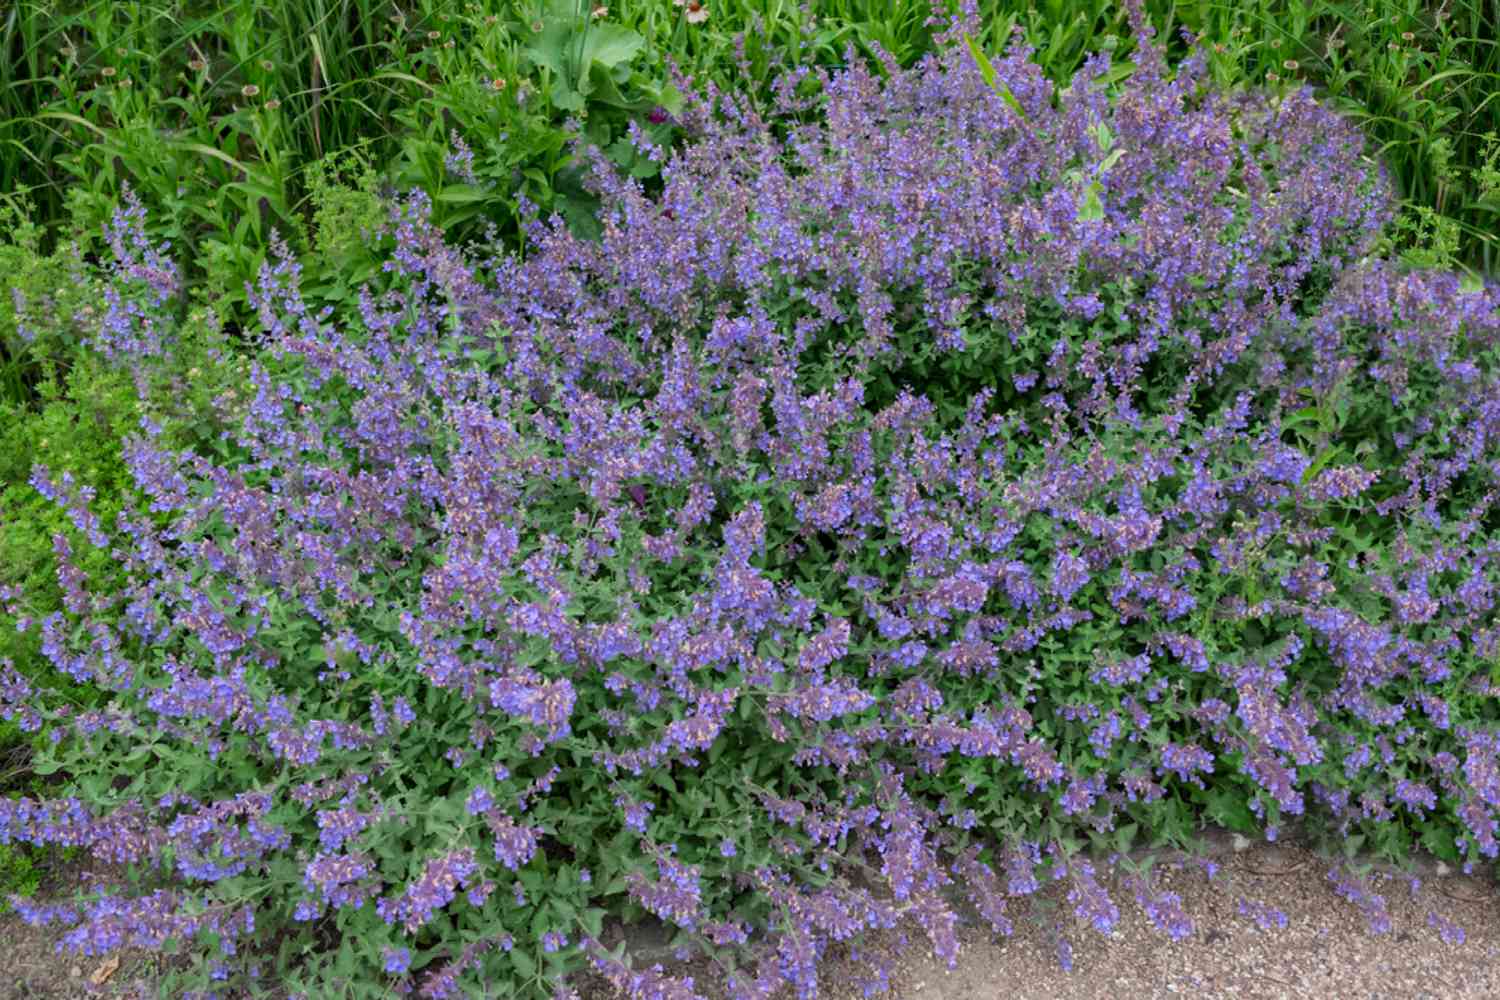 Catmint bush purple flowers edging a gravel path